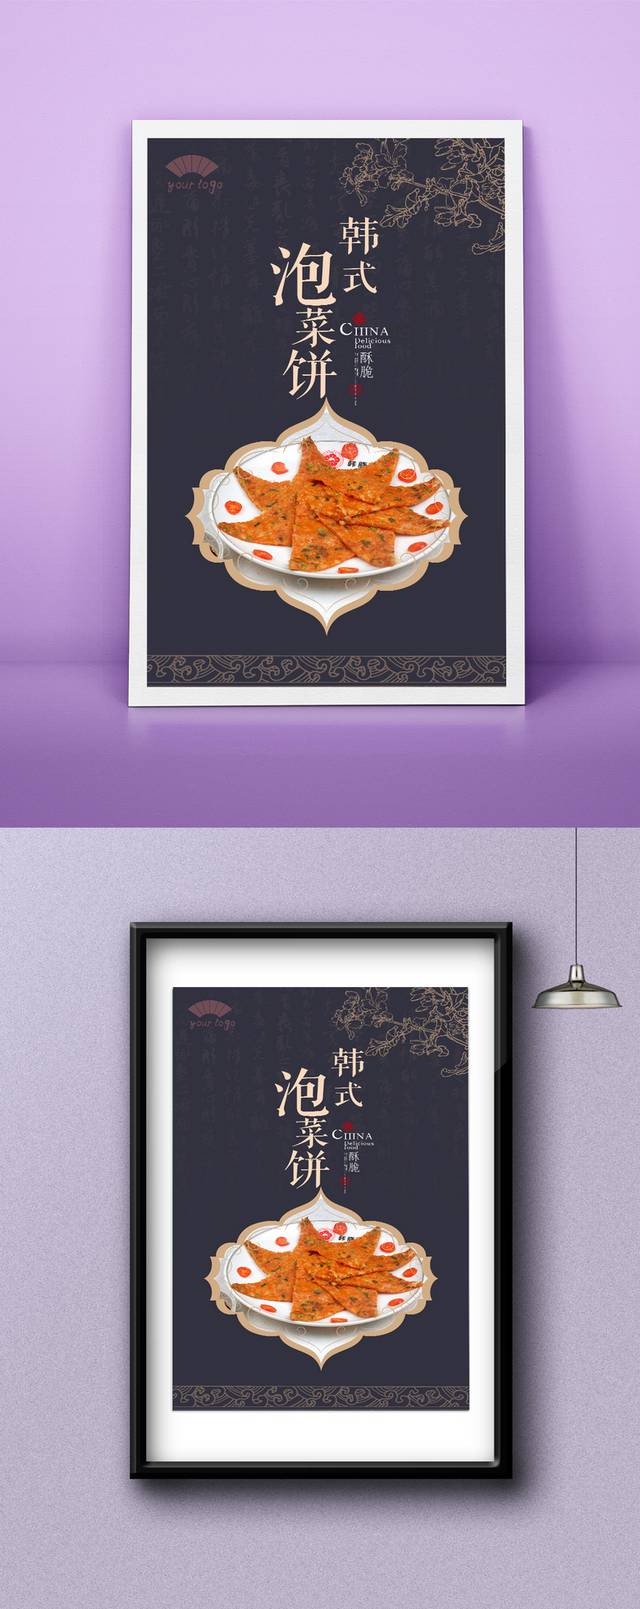 原创韩式泡菜饼宣传海报设计